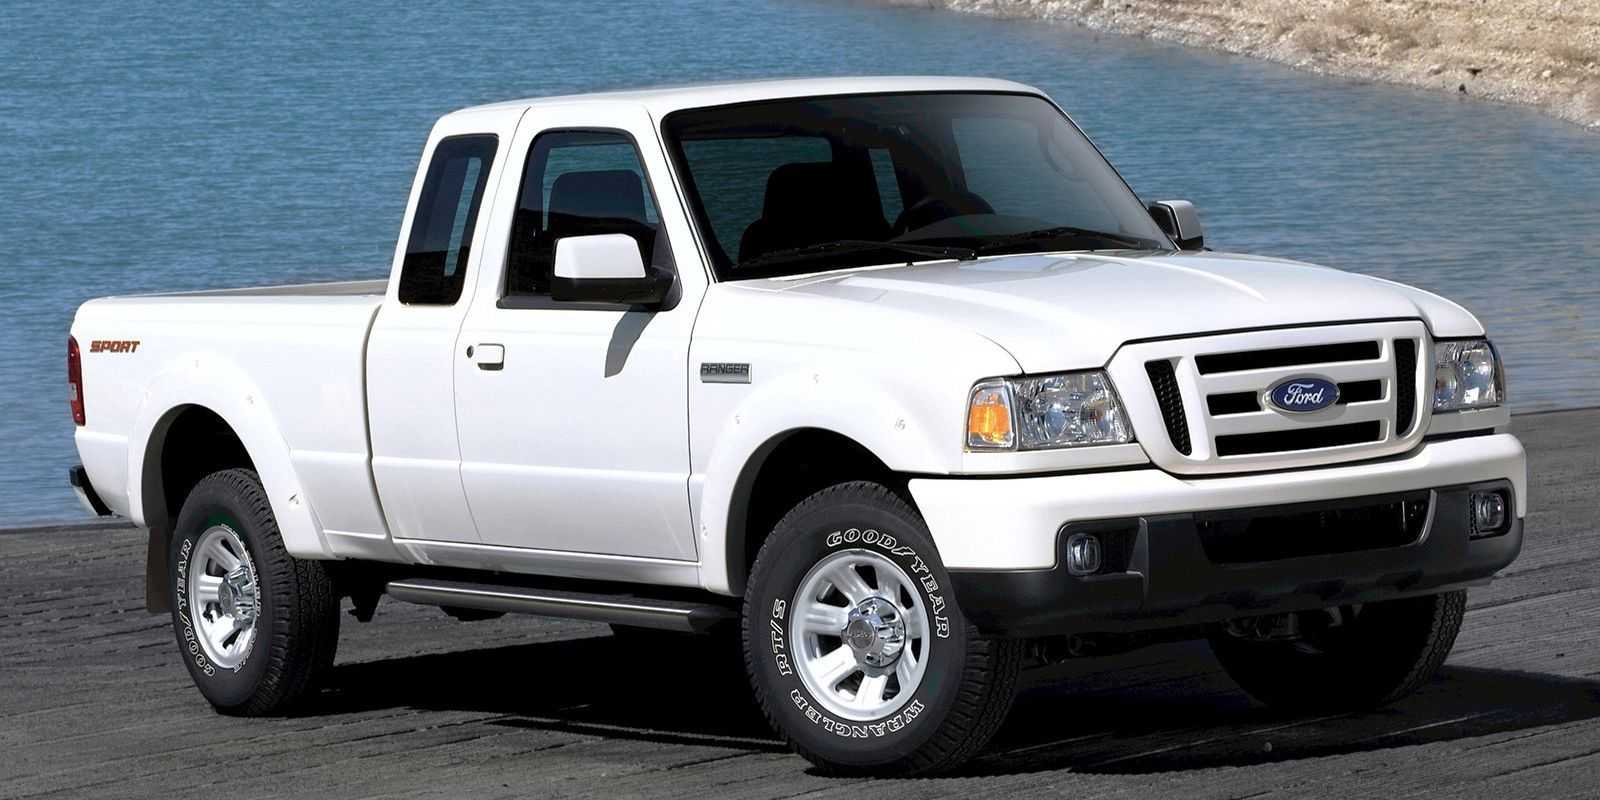 Ford ranger 2019-2020 цена, технические характеристики, фото, видео тест-драйв